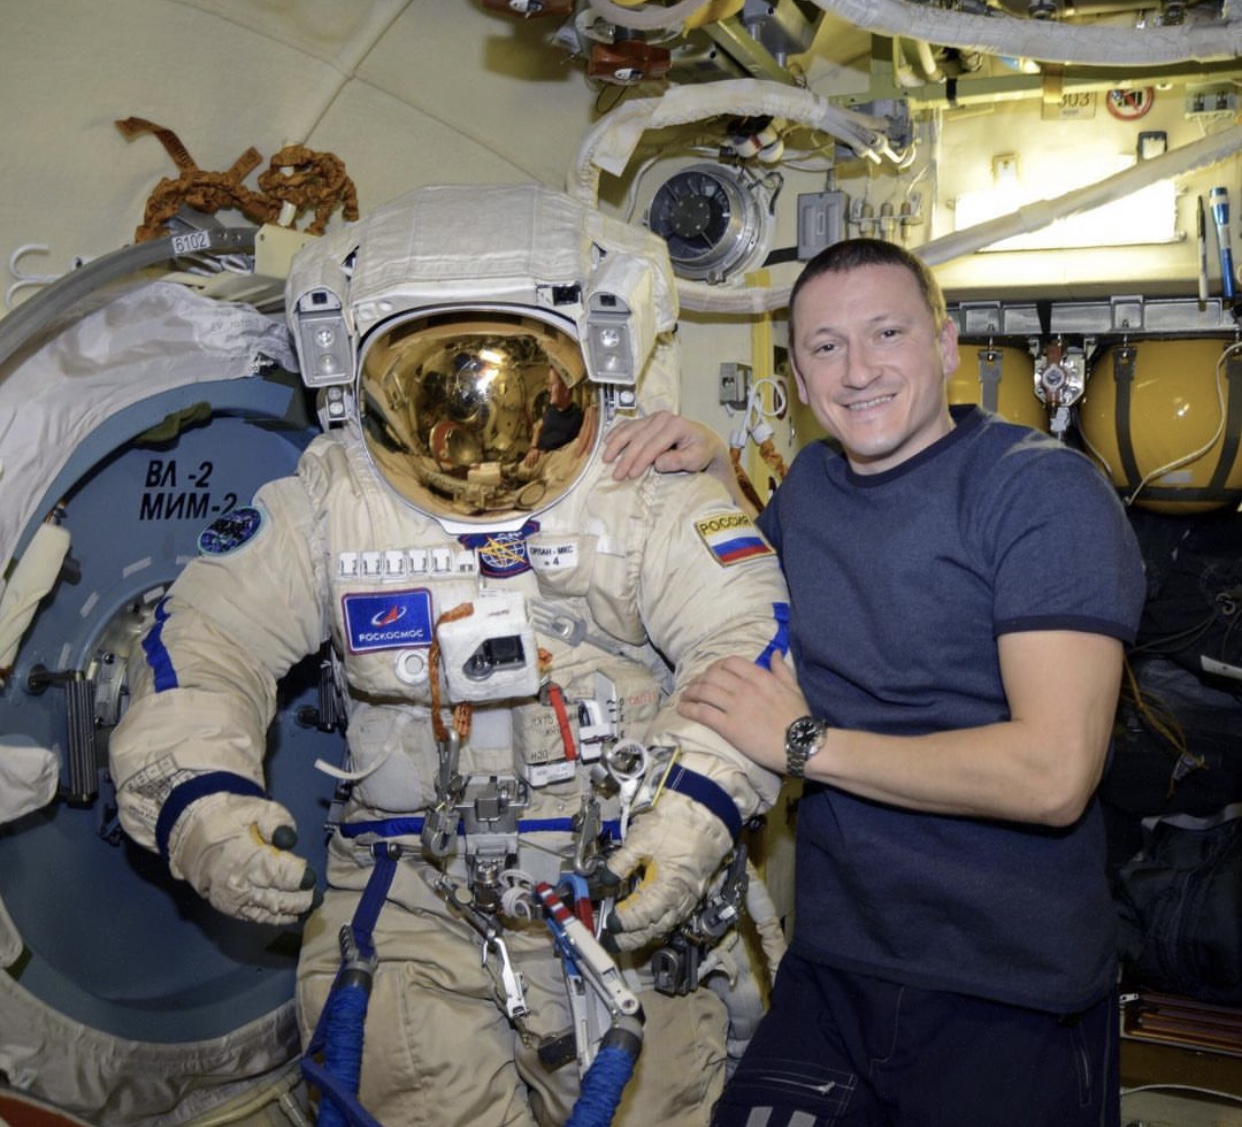 “الأرض وطننا” – مقابلة مع رائد الفضاء الروسي سيرجي كود-سفيرشكوف